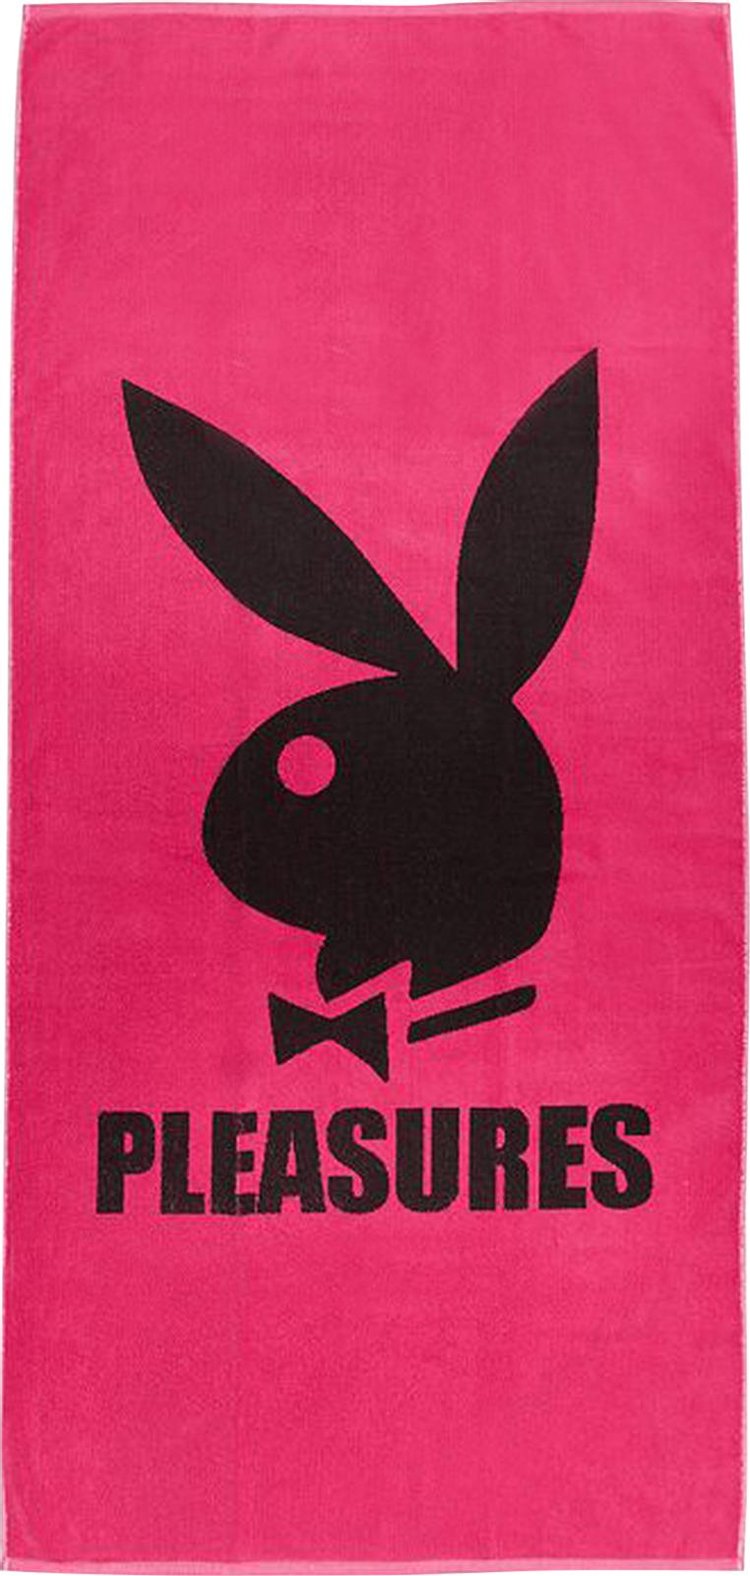 Pleasures x Playboy Towel 'Pink'